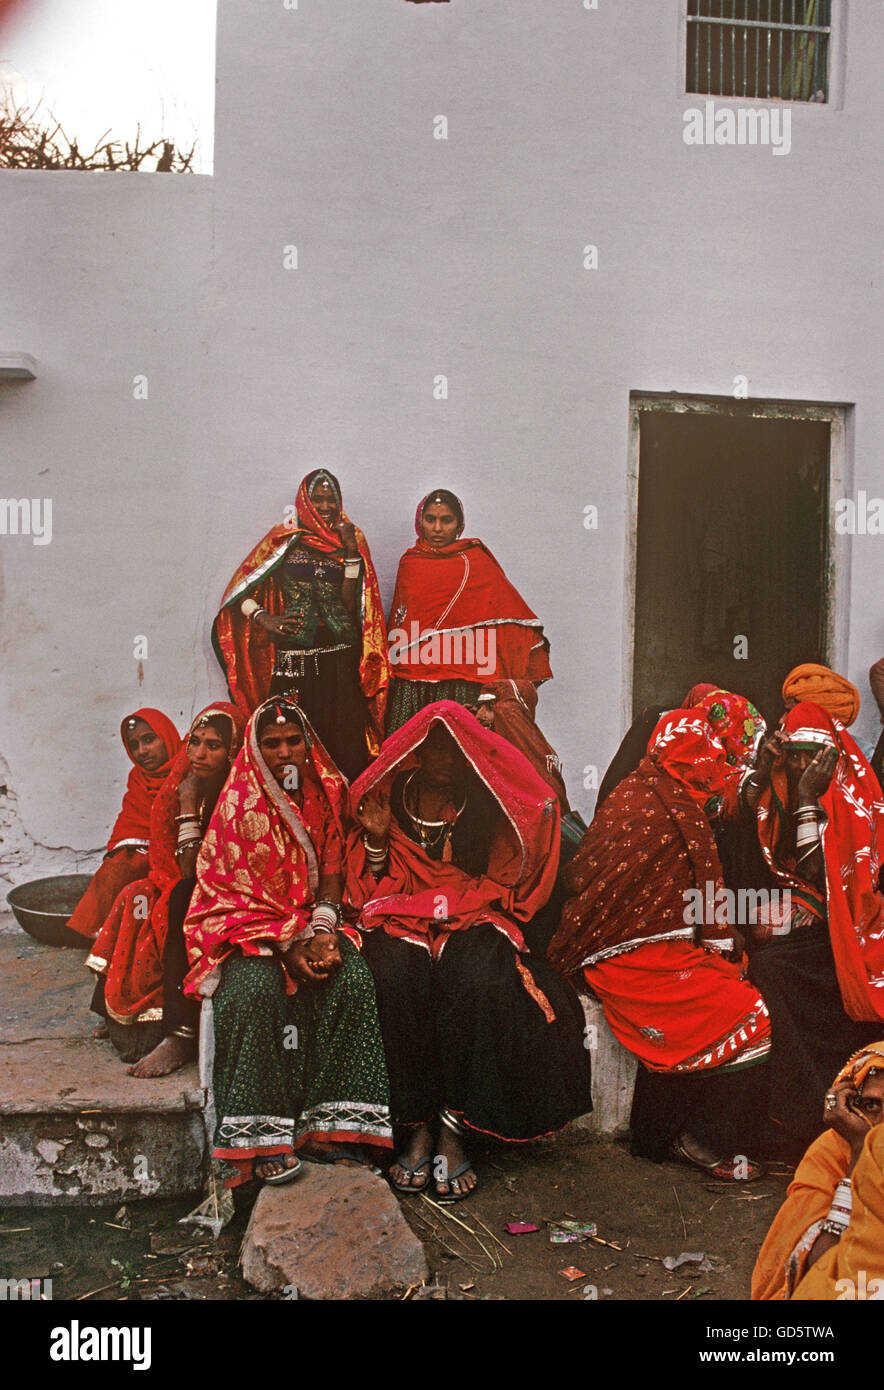 Women at Pushkar fair Stock Photo